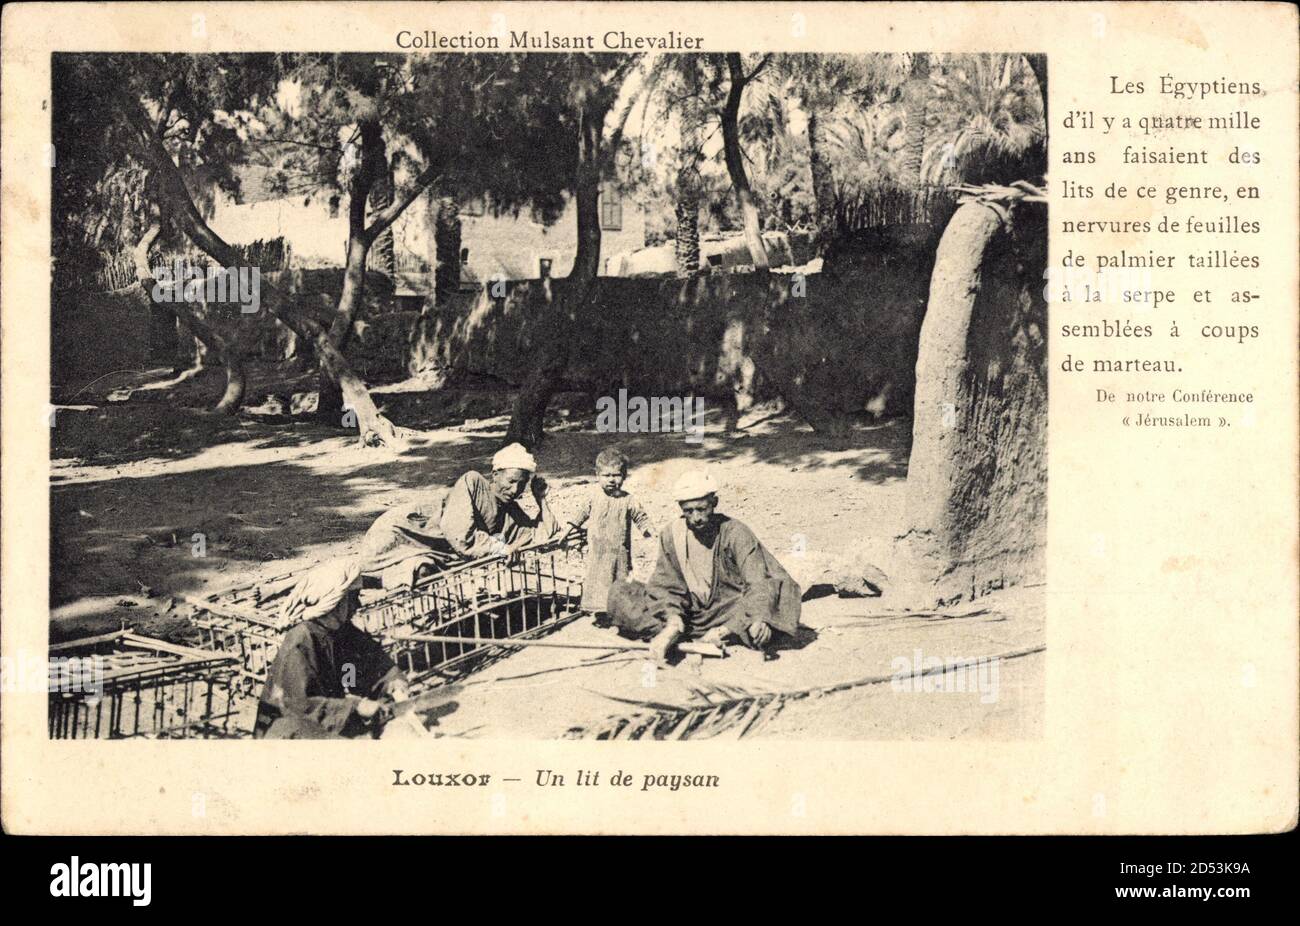 Luxor Ägypten, Un lit de paysan, Einheimische, Collection Mulsant Chevalier  | usage worldwide Stock Photo - Alamy